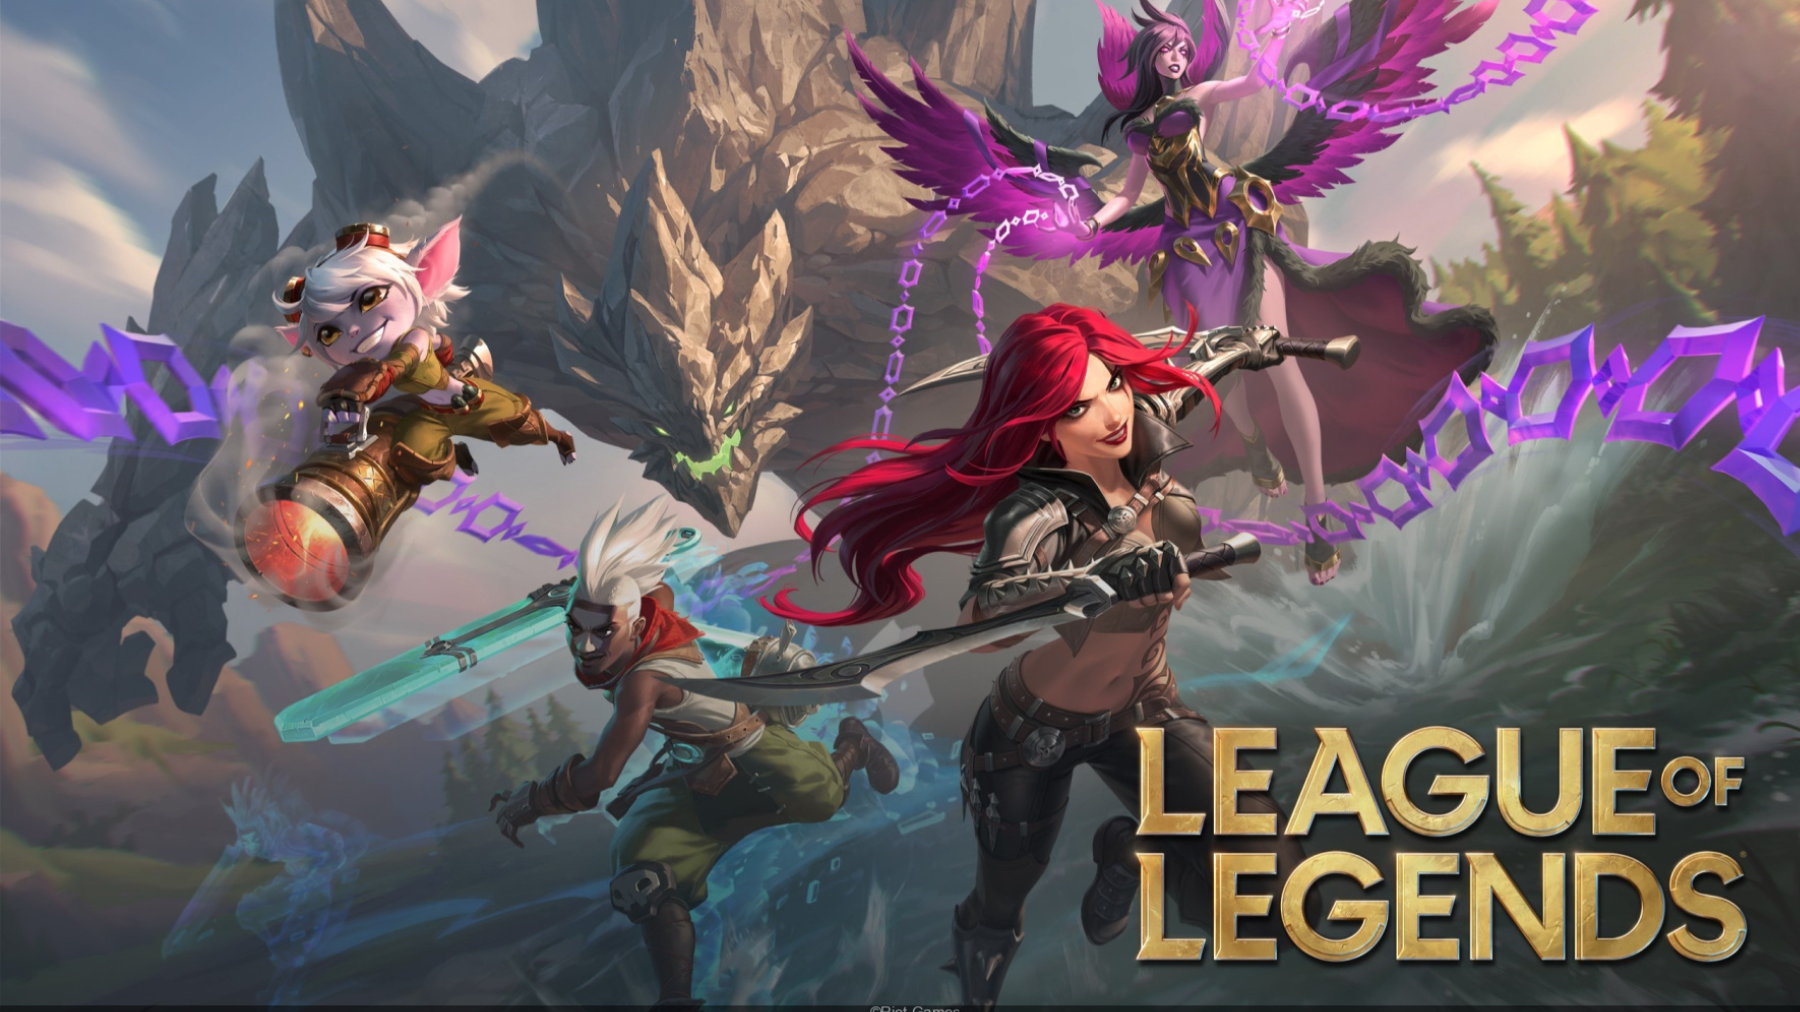 Hwei’s abilities revealed in ‘League of Legends’